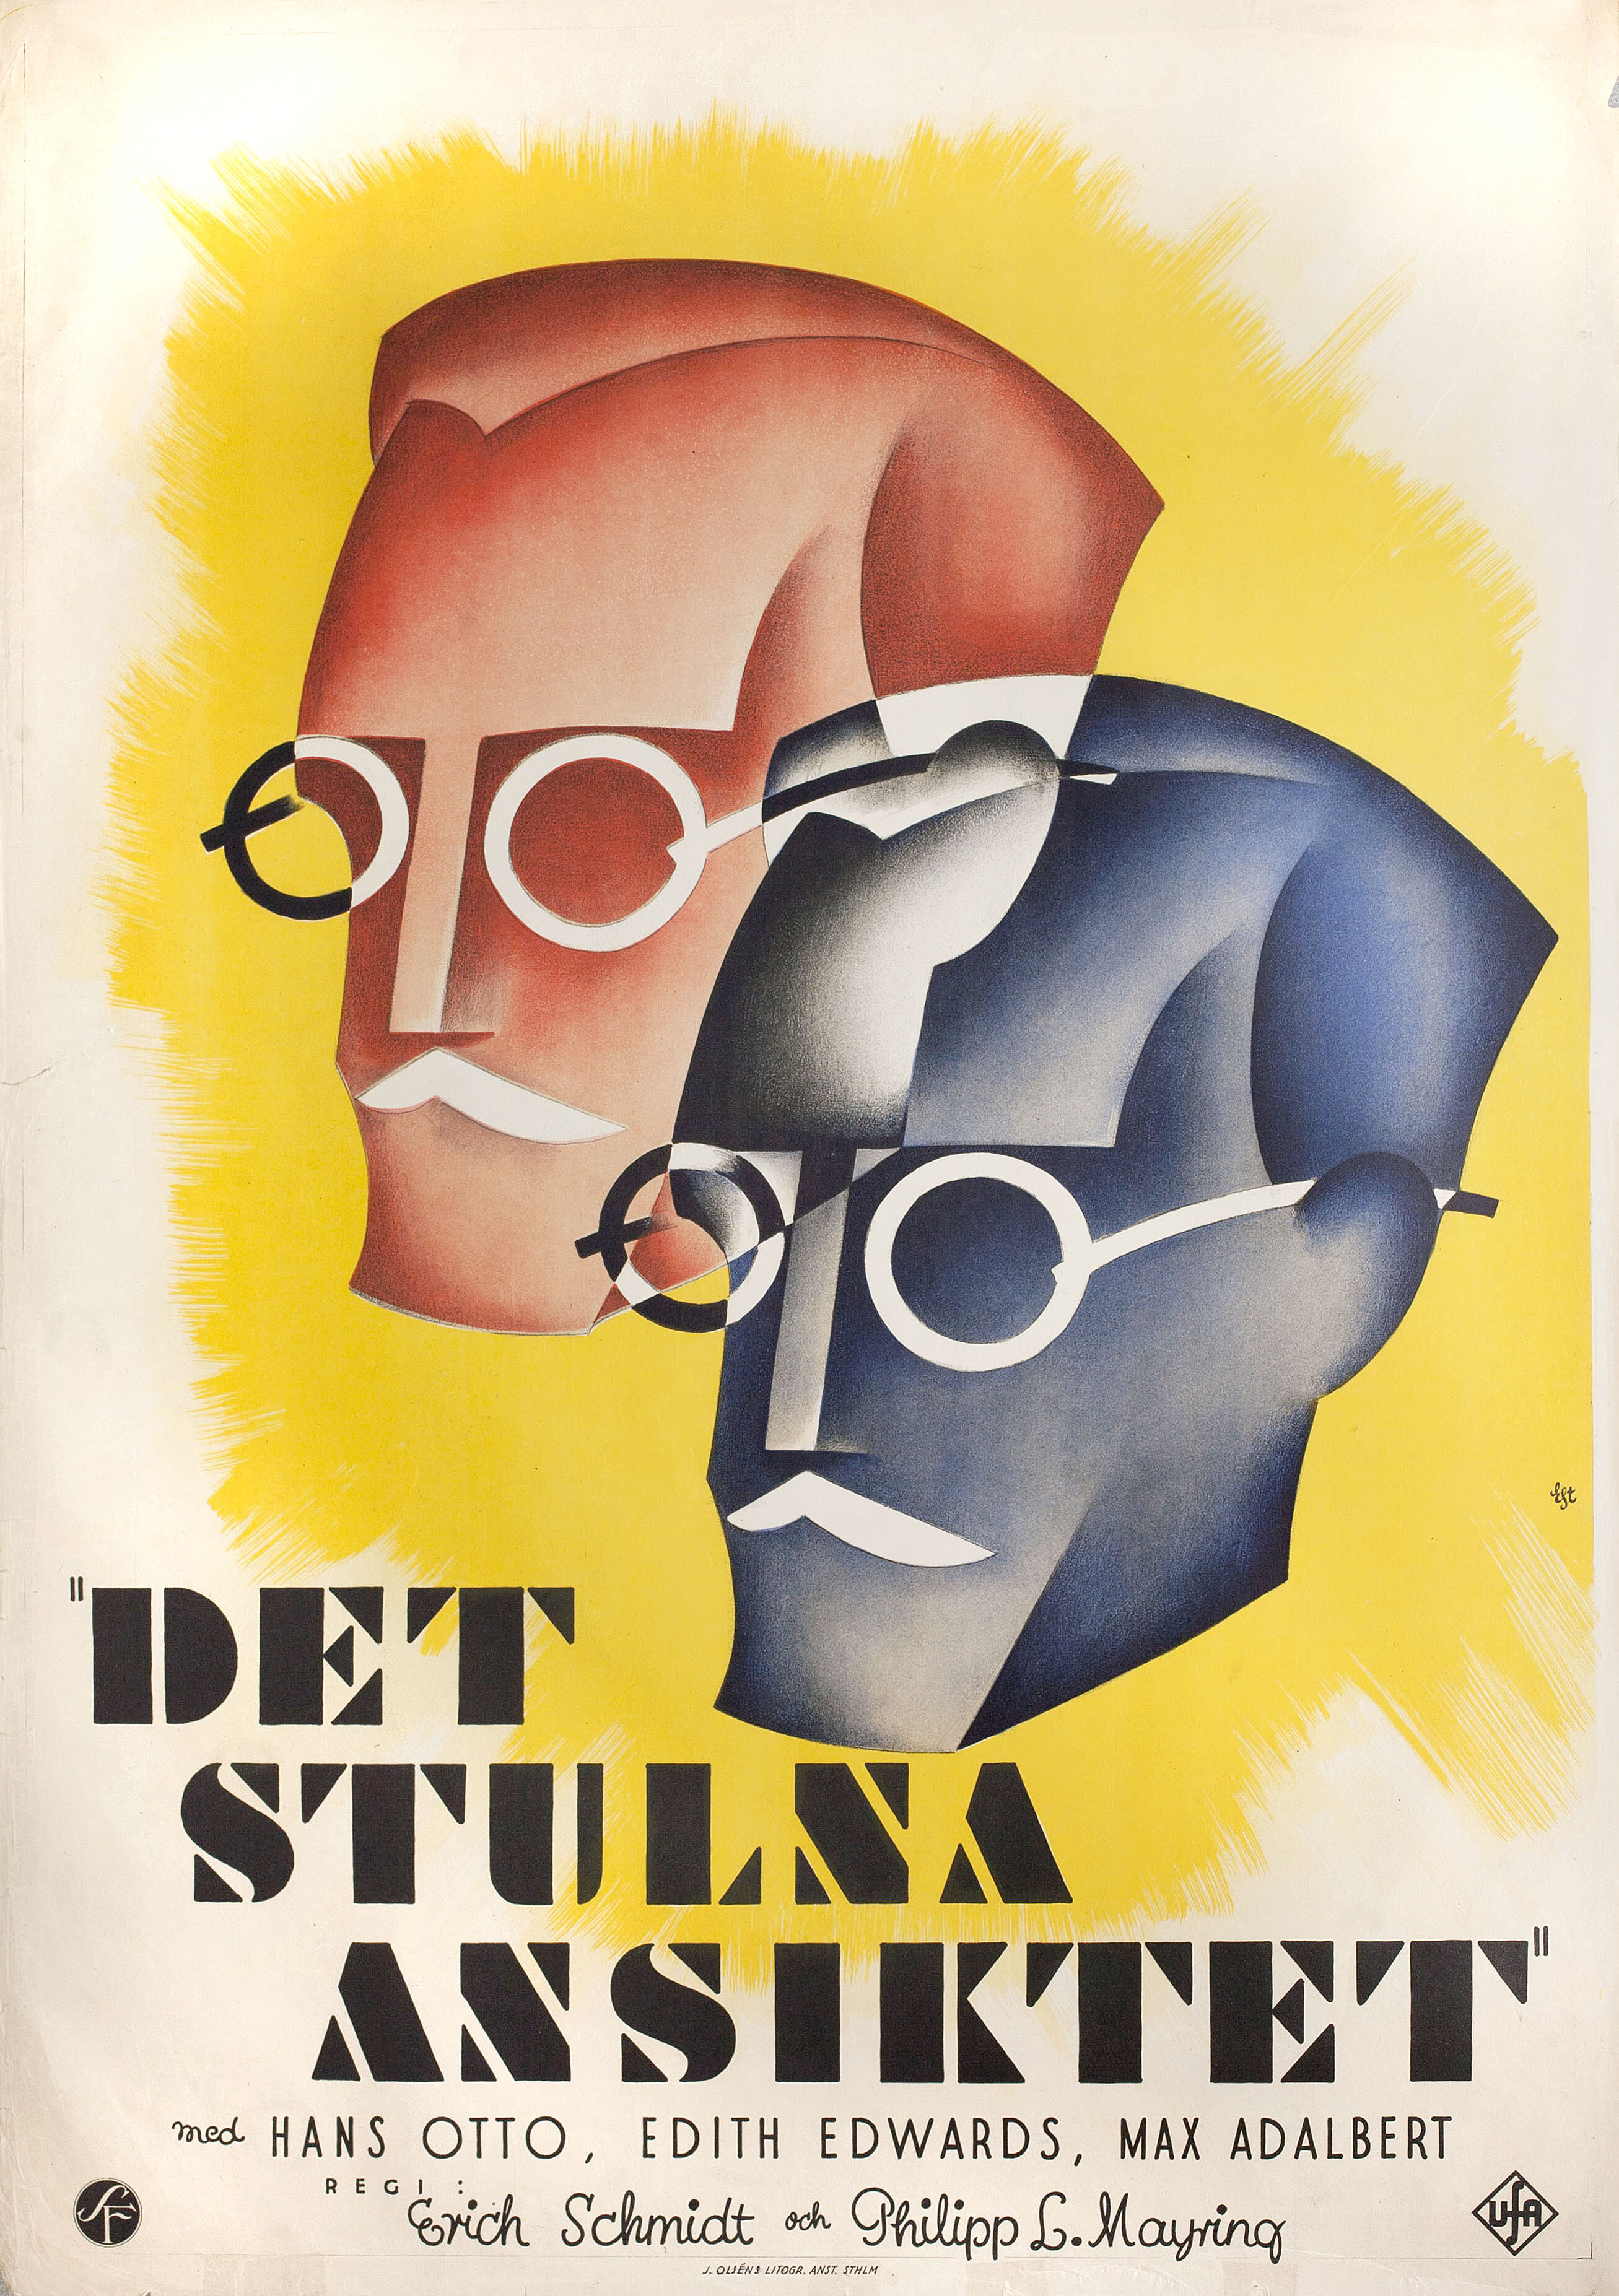 Украденное лицо (The Stolen Face, 1930), режиссёр Филипп Лотар Мэйринг, постер к фильму в стиле ар-деко (Швеция, 1930 год)